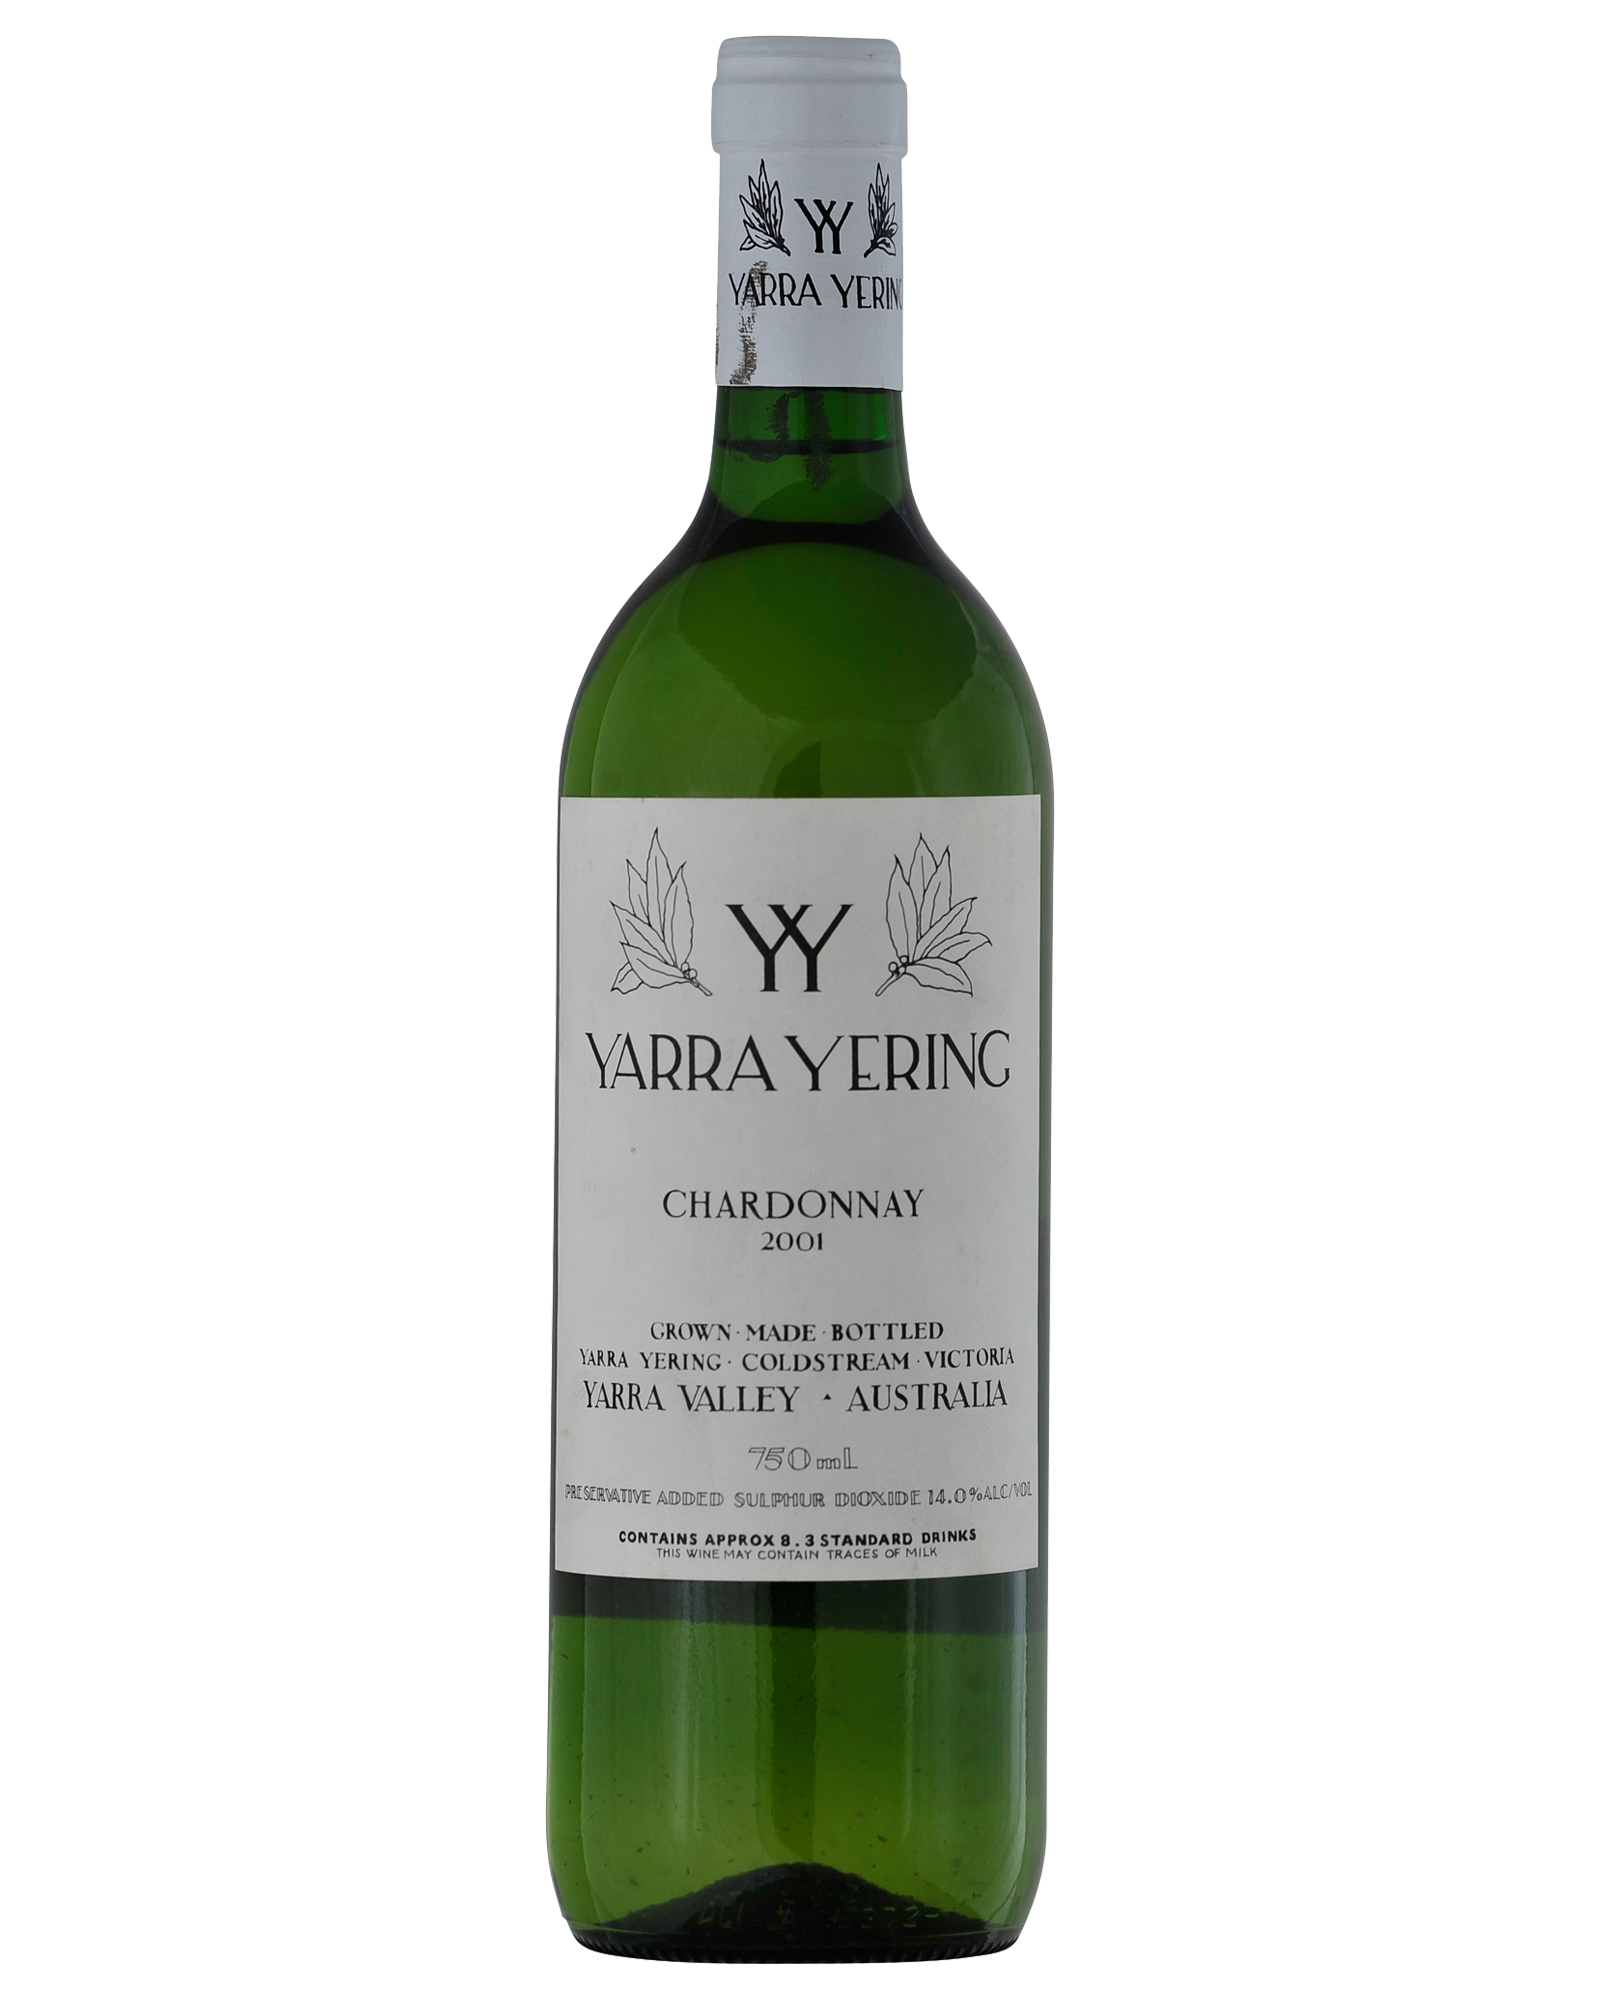 Yarra Yering Chardonnay 2001